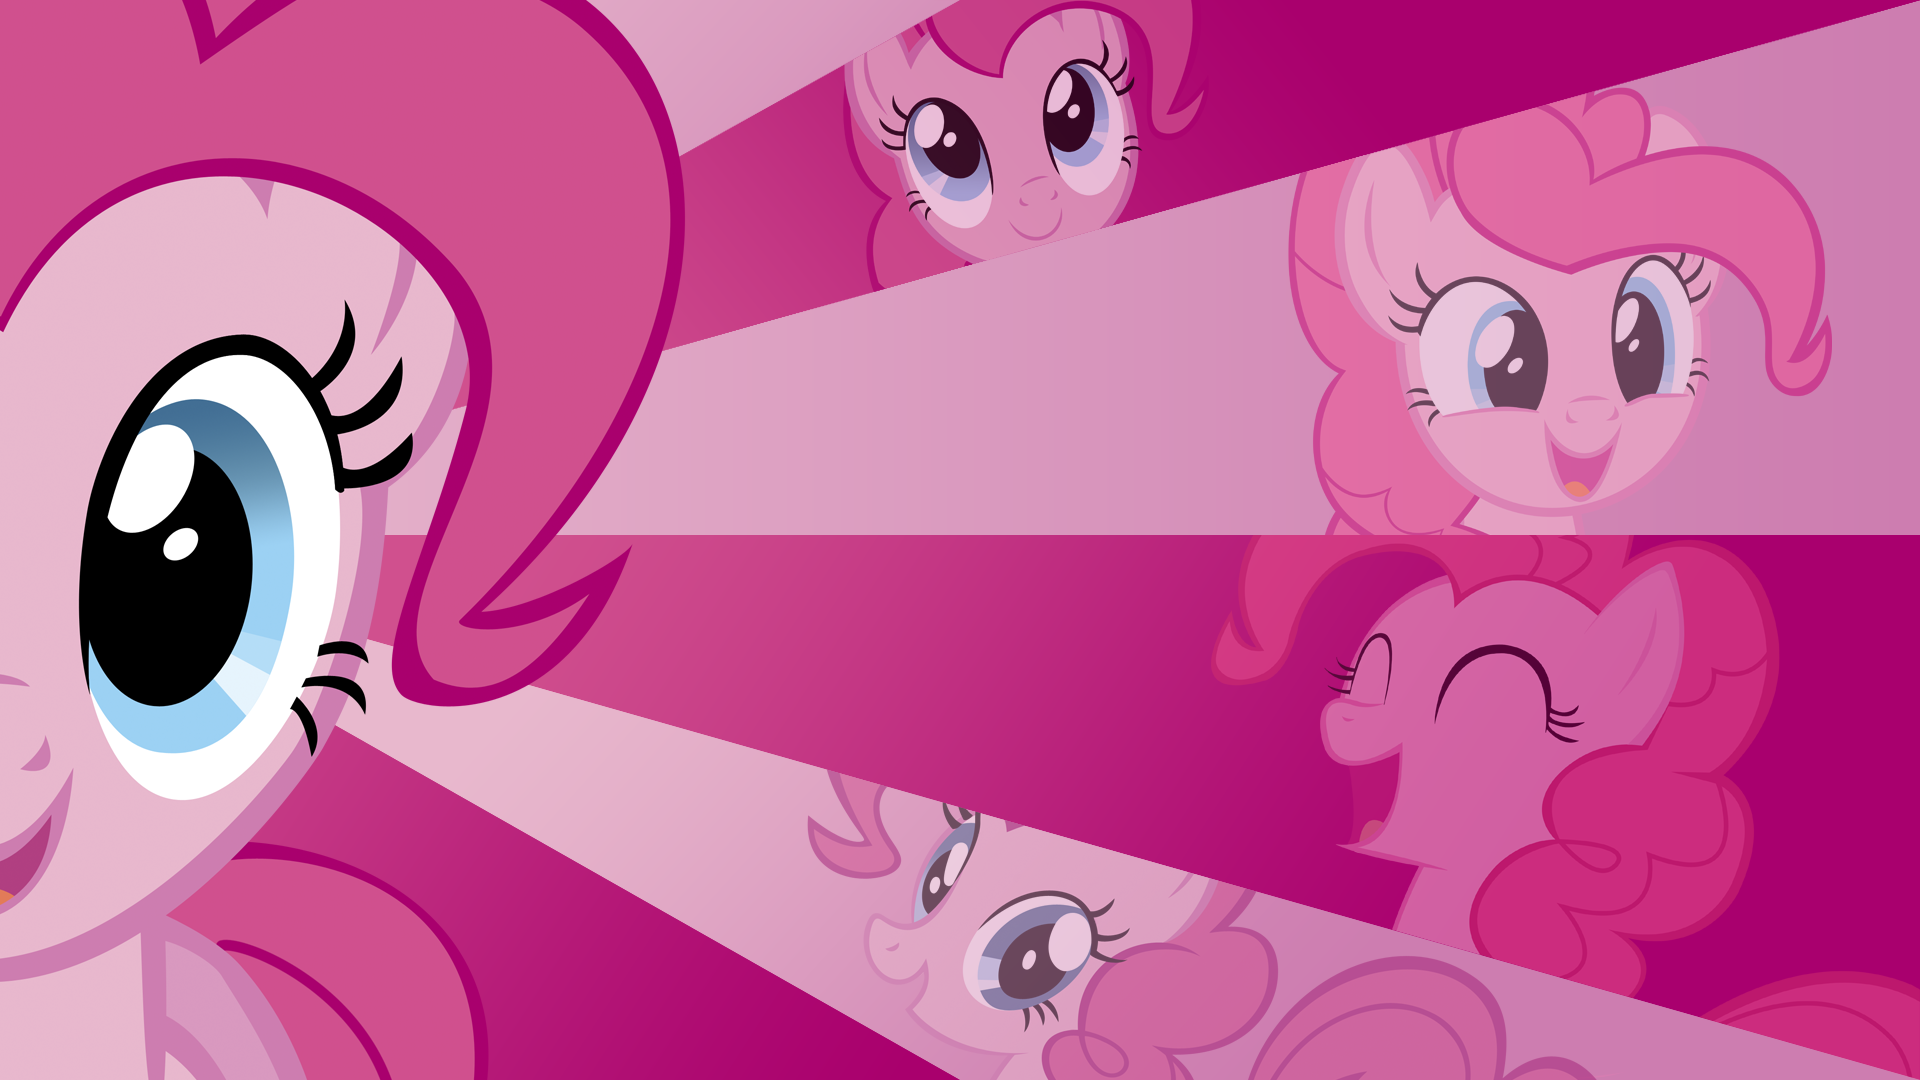 Pinkie Pie Wallpaper: Pinkie Pie Wallpaper. Pinkie pie, My little pony wallpaper, Live wallpaper